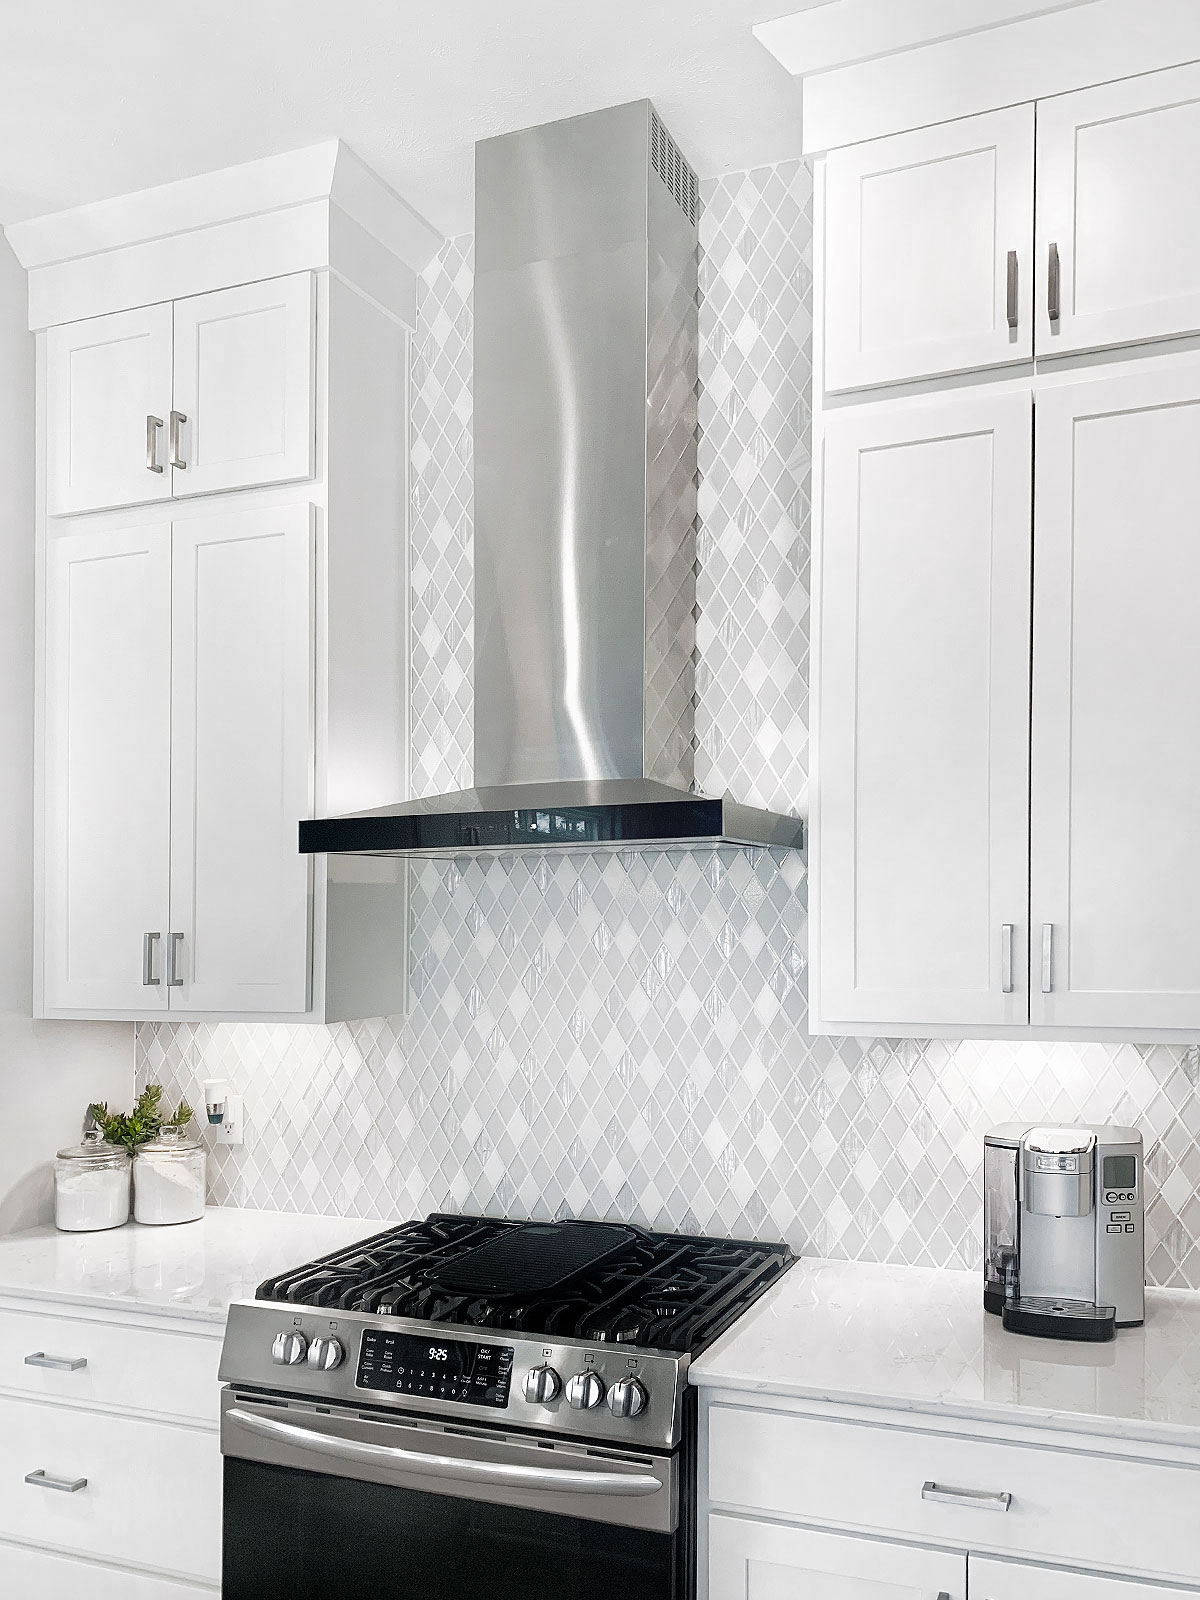 Full White Kitchen Cabinet Quartz Countertop White Backsplash Tile BA62046